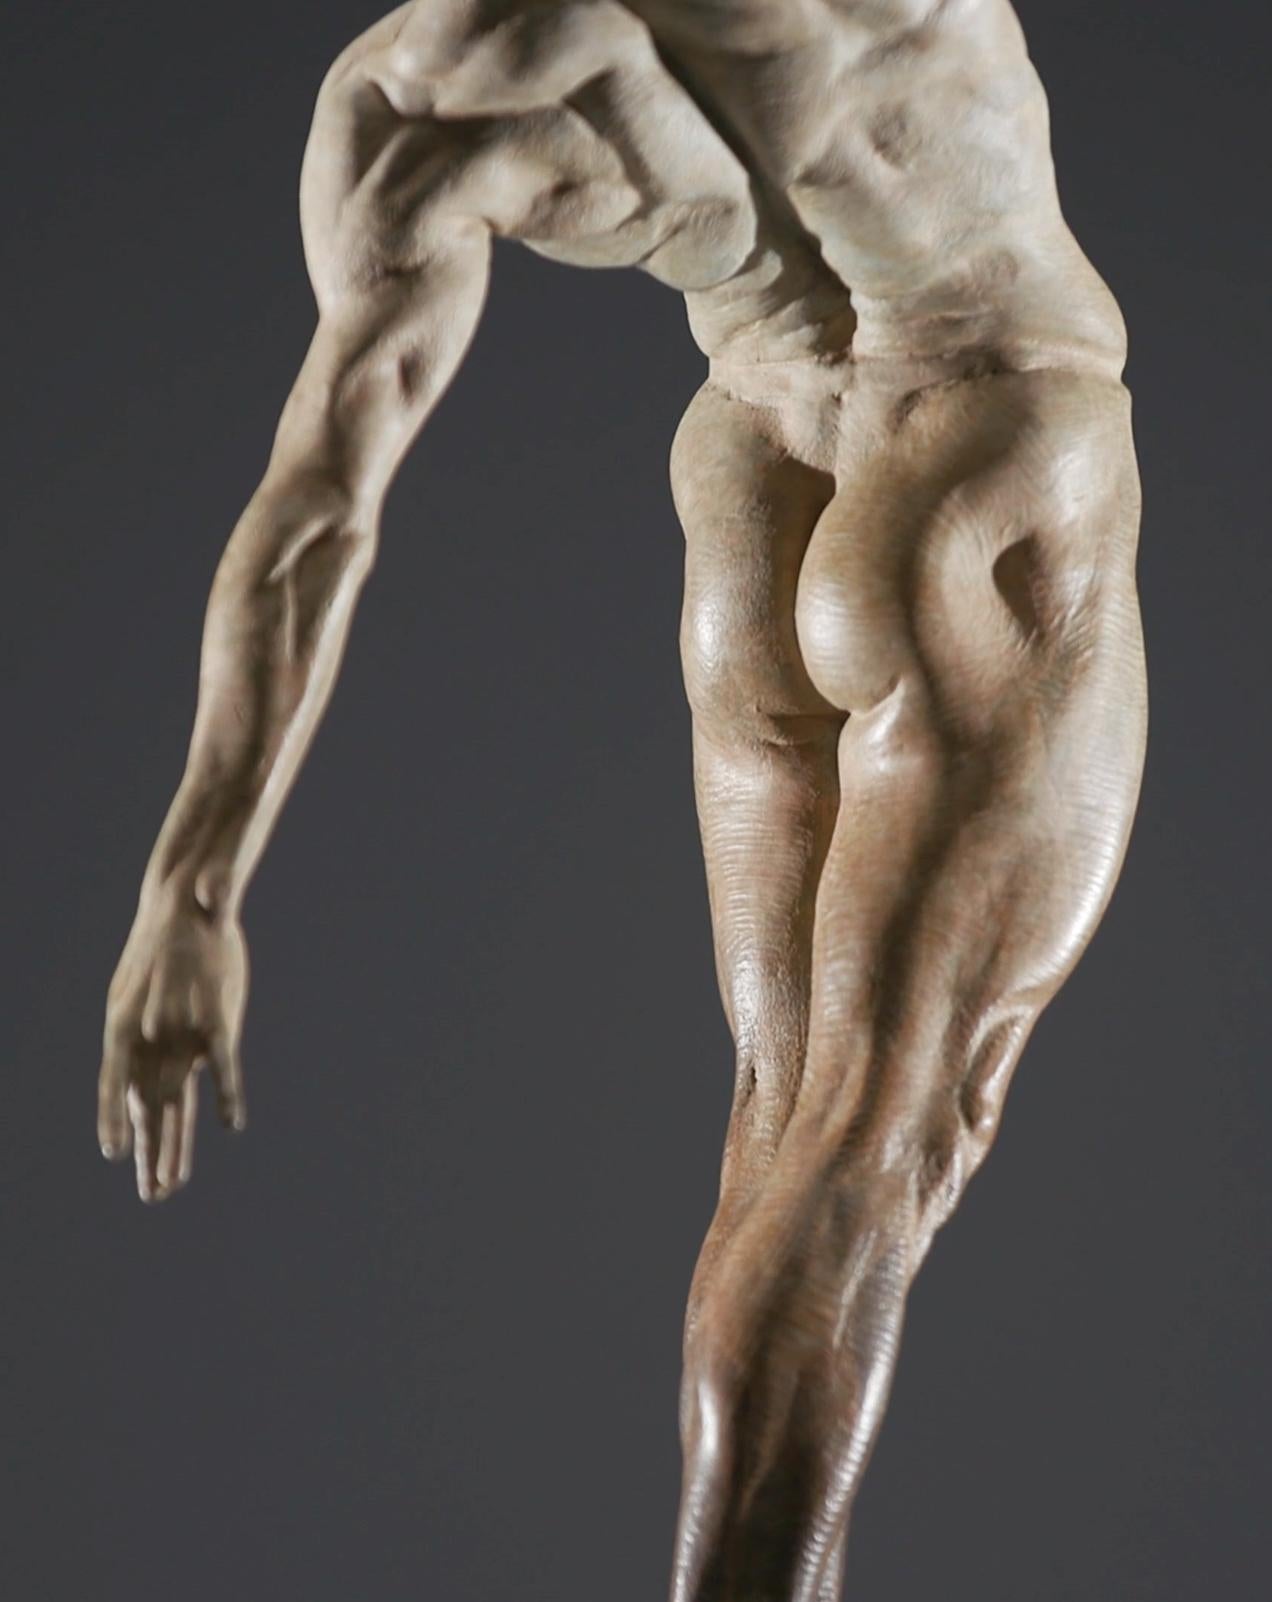 	
In seinem Werk mit dem Titel Allongé - zu Deutsch: verlängern oder strecken - hat Richard MacDonald die kraftvollen Linien der Tänzerinnen und Tänzer modelliert und so die anmutigen und zugleich kraftvollen Formen ihrer Körper betont. In der